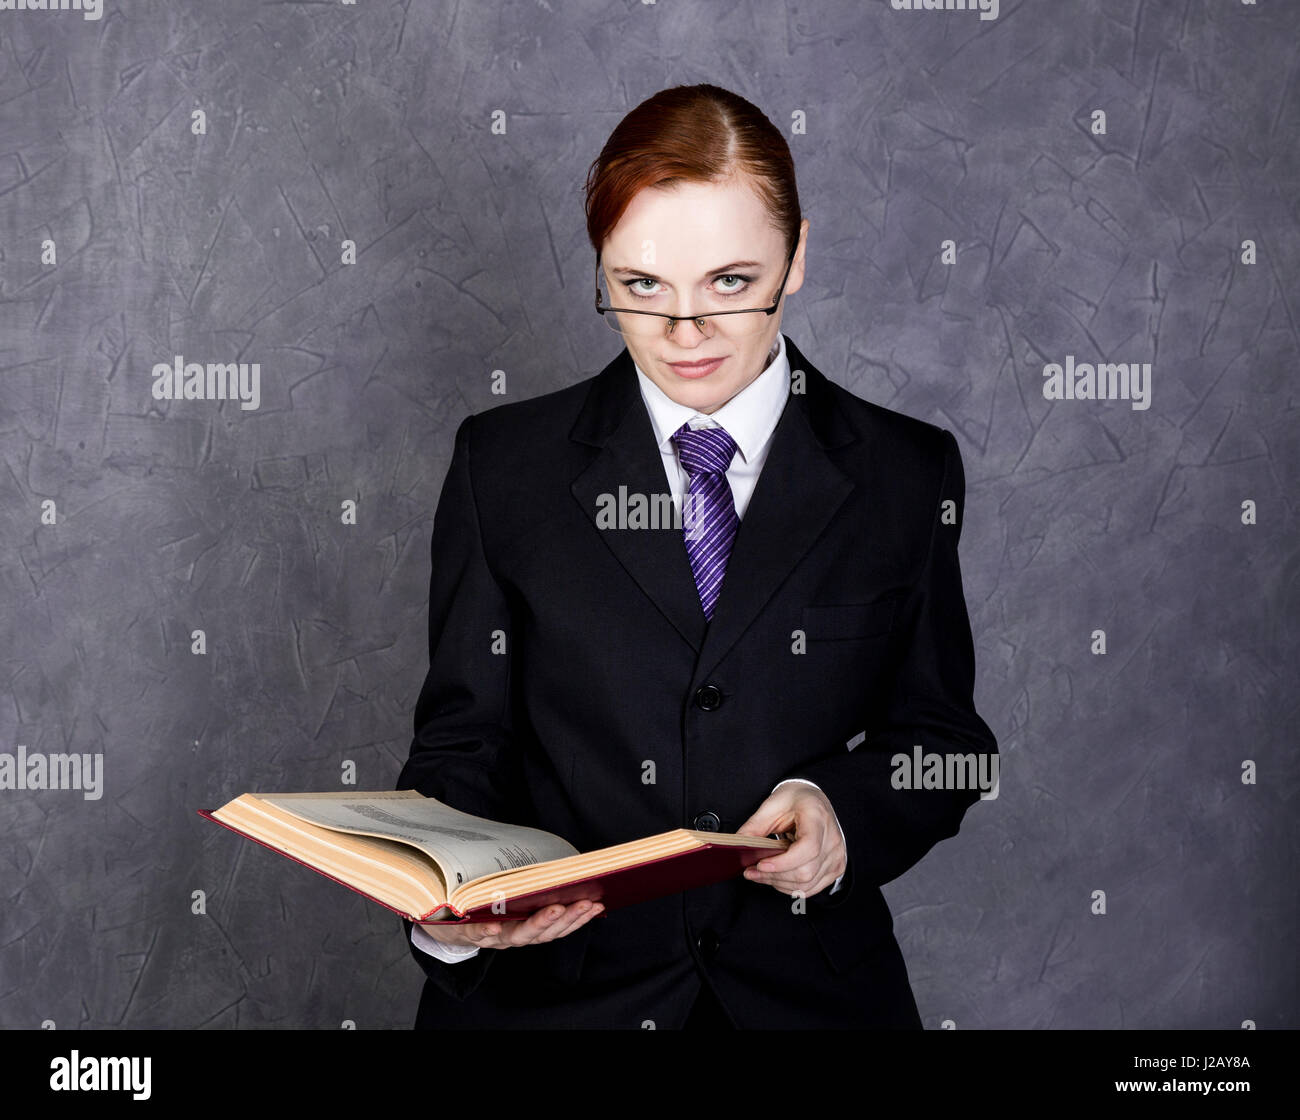 Avocate lit un gros livre avec sérieux, femme d'un homme en costume, cravate  et lunettes Photo Stock - Alamy